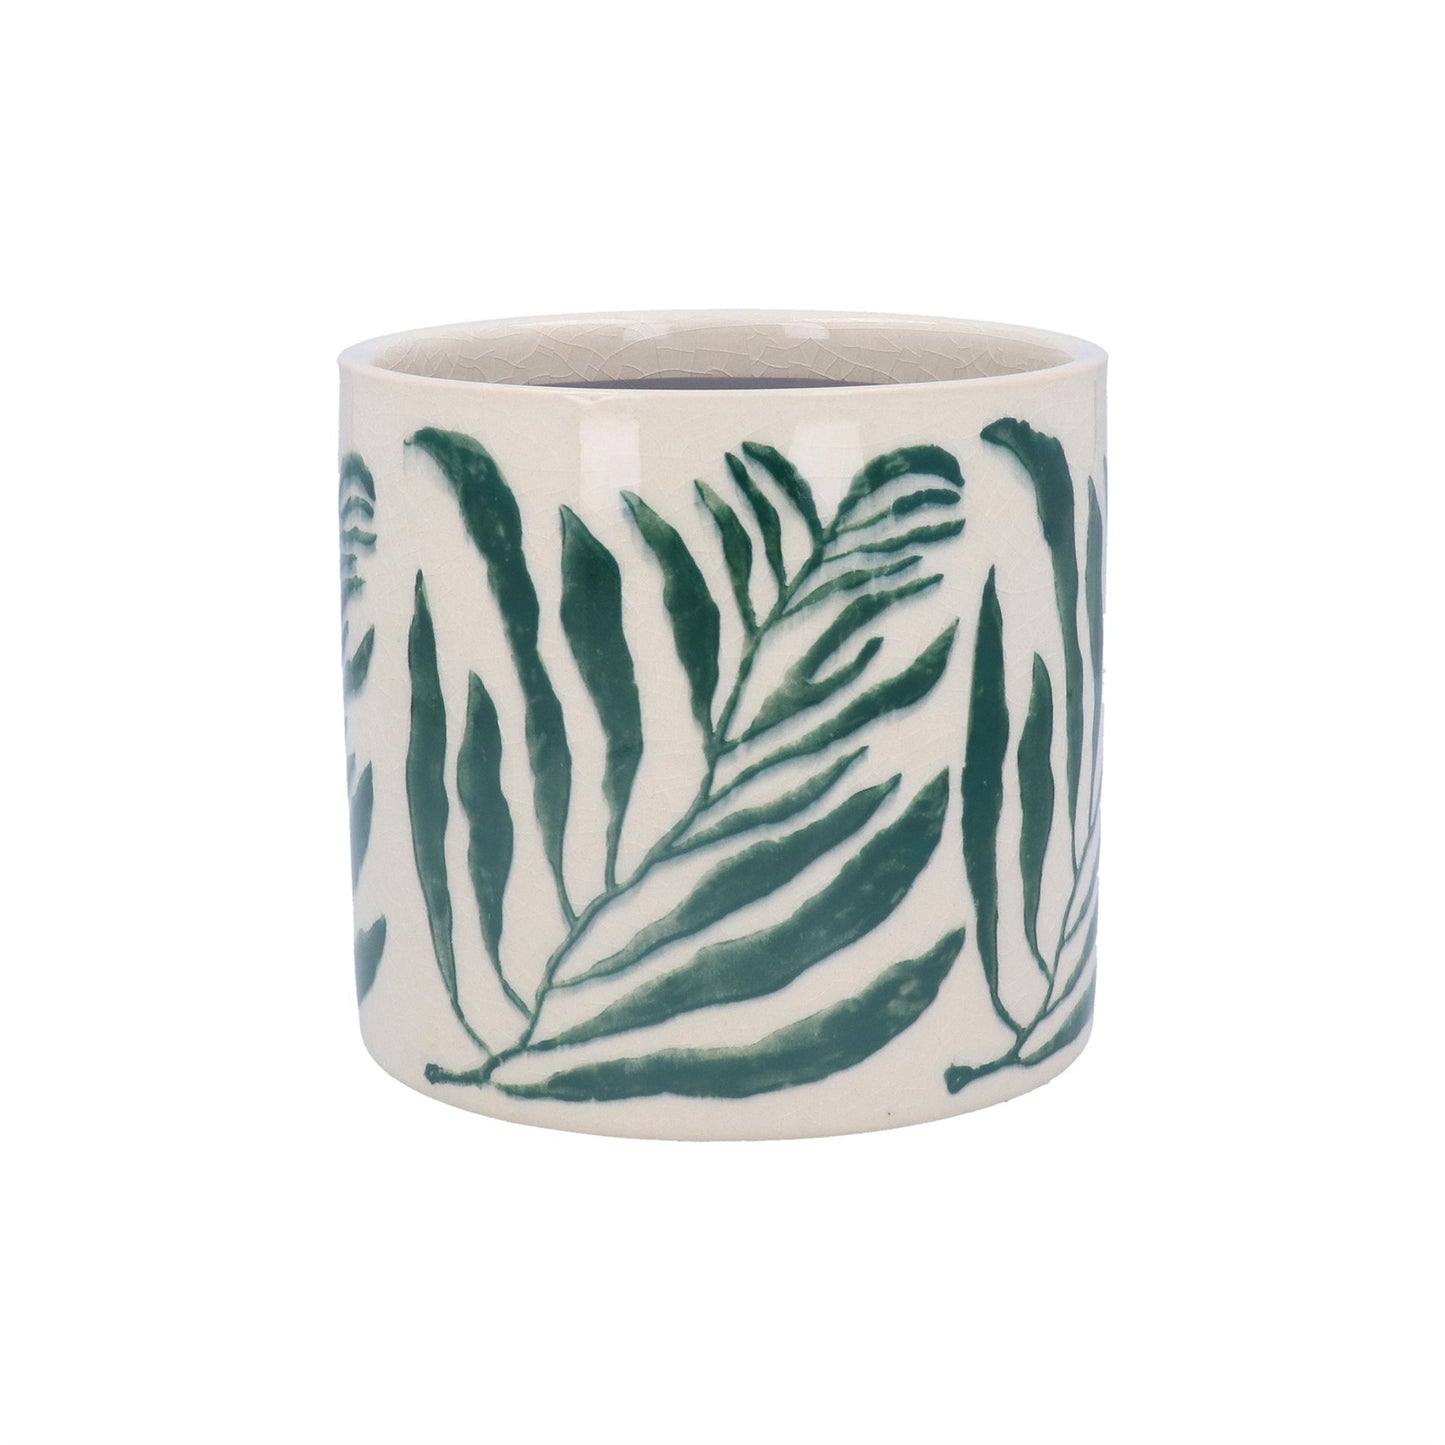 Green Branch Ceramic Pot Cover  - Small